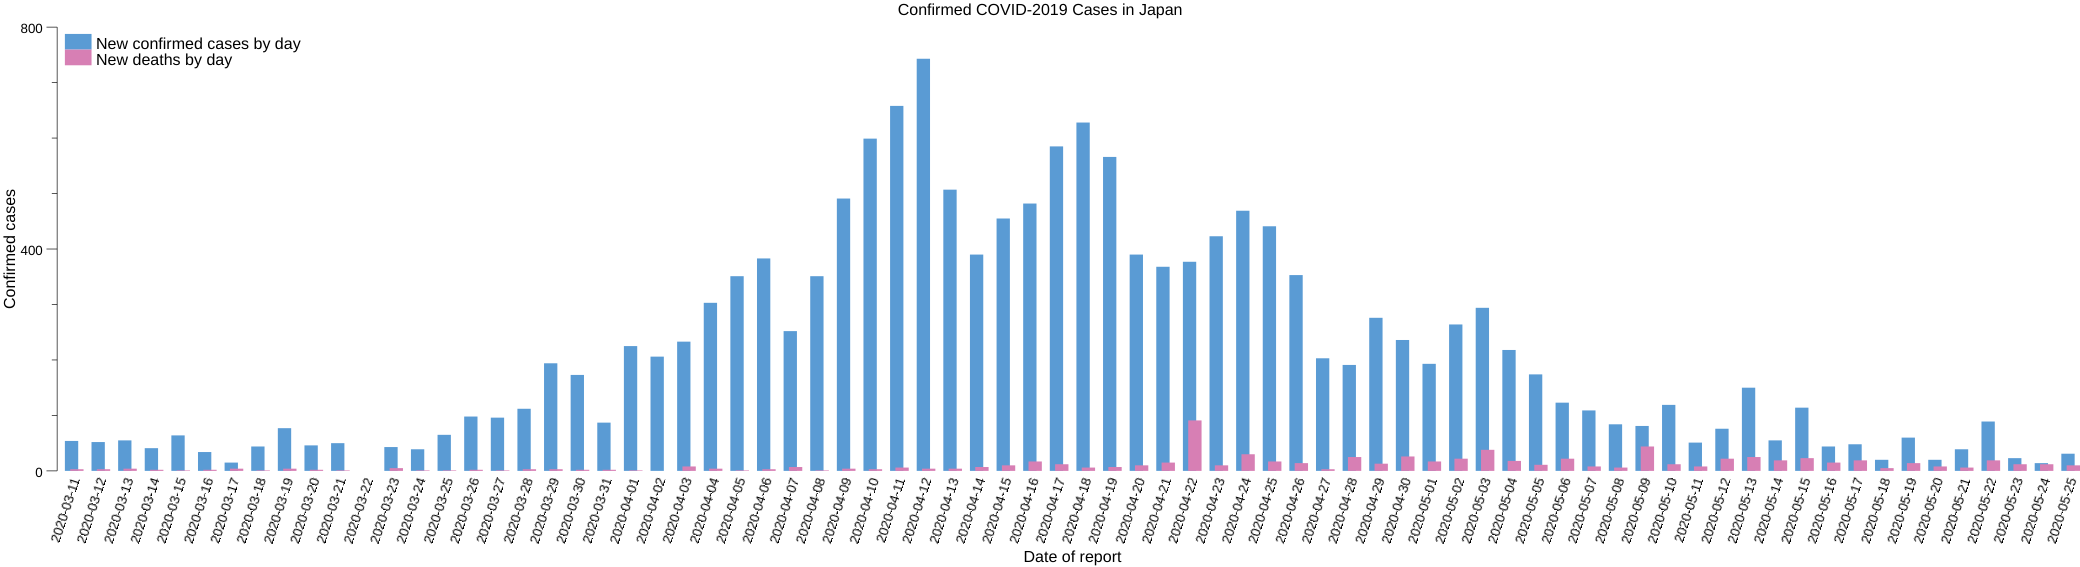 日本における COVID-2019 発症確認者のレポート